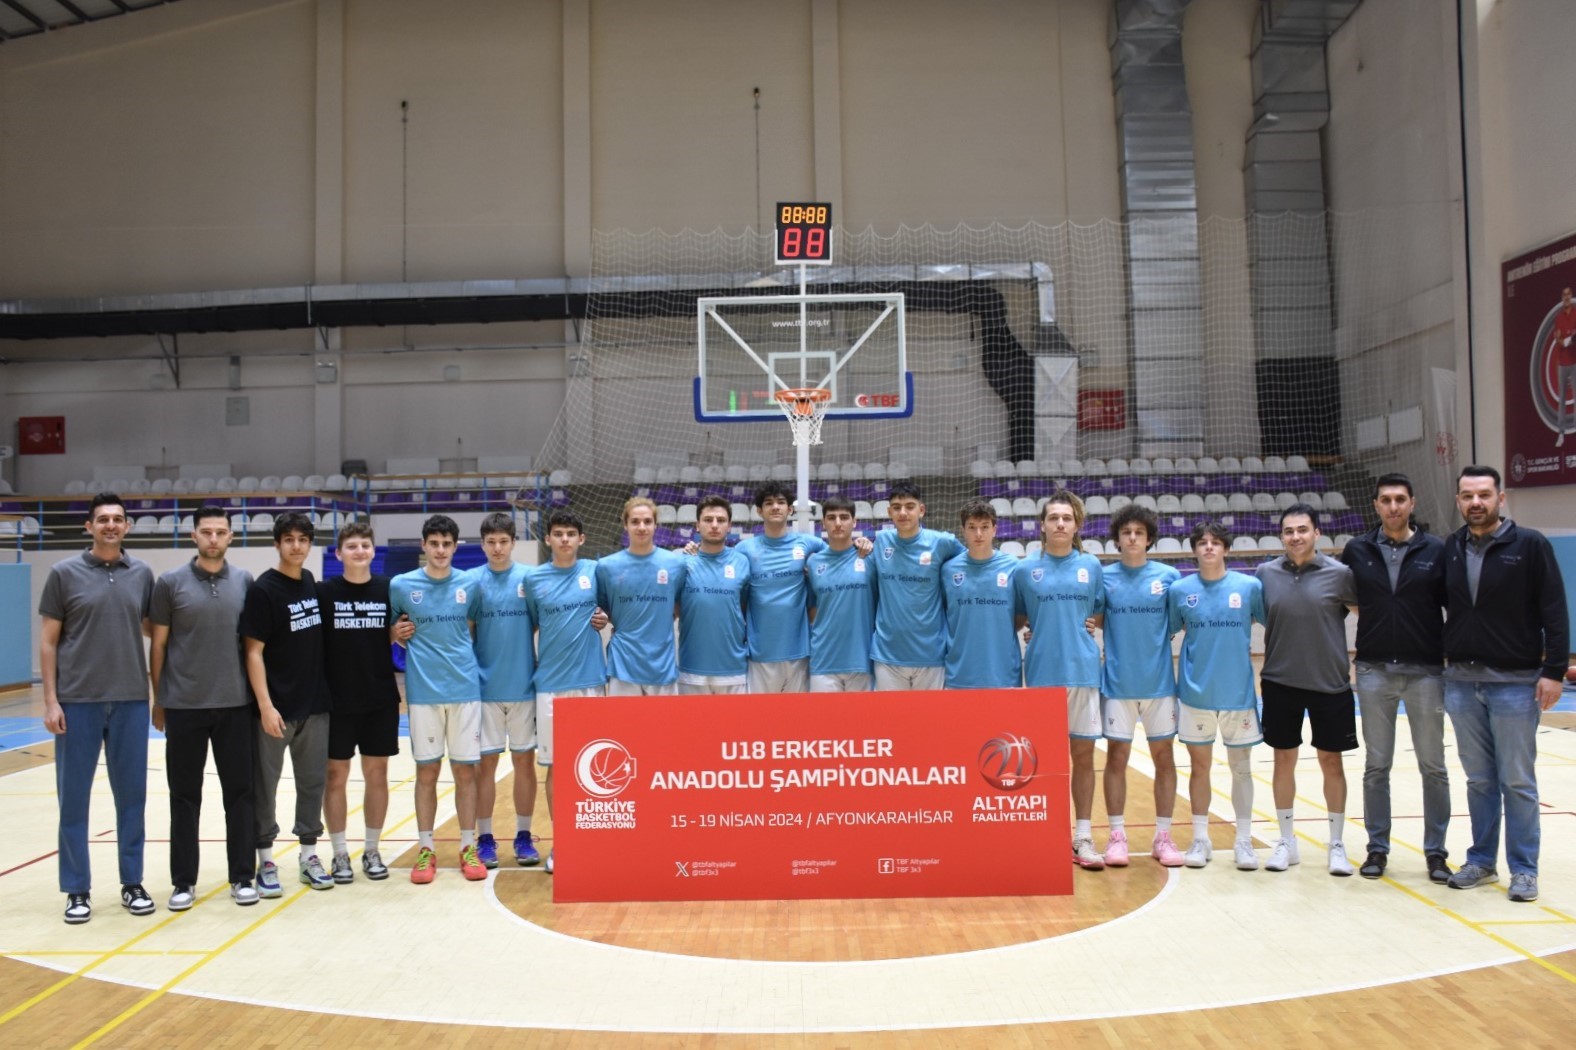 U-18 Erkekler Anadolu Şampiyonları grup müsabakaları sona erdi
